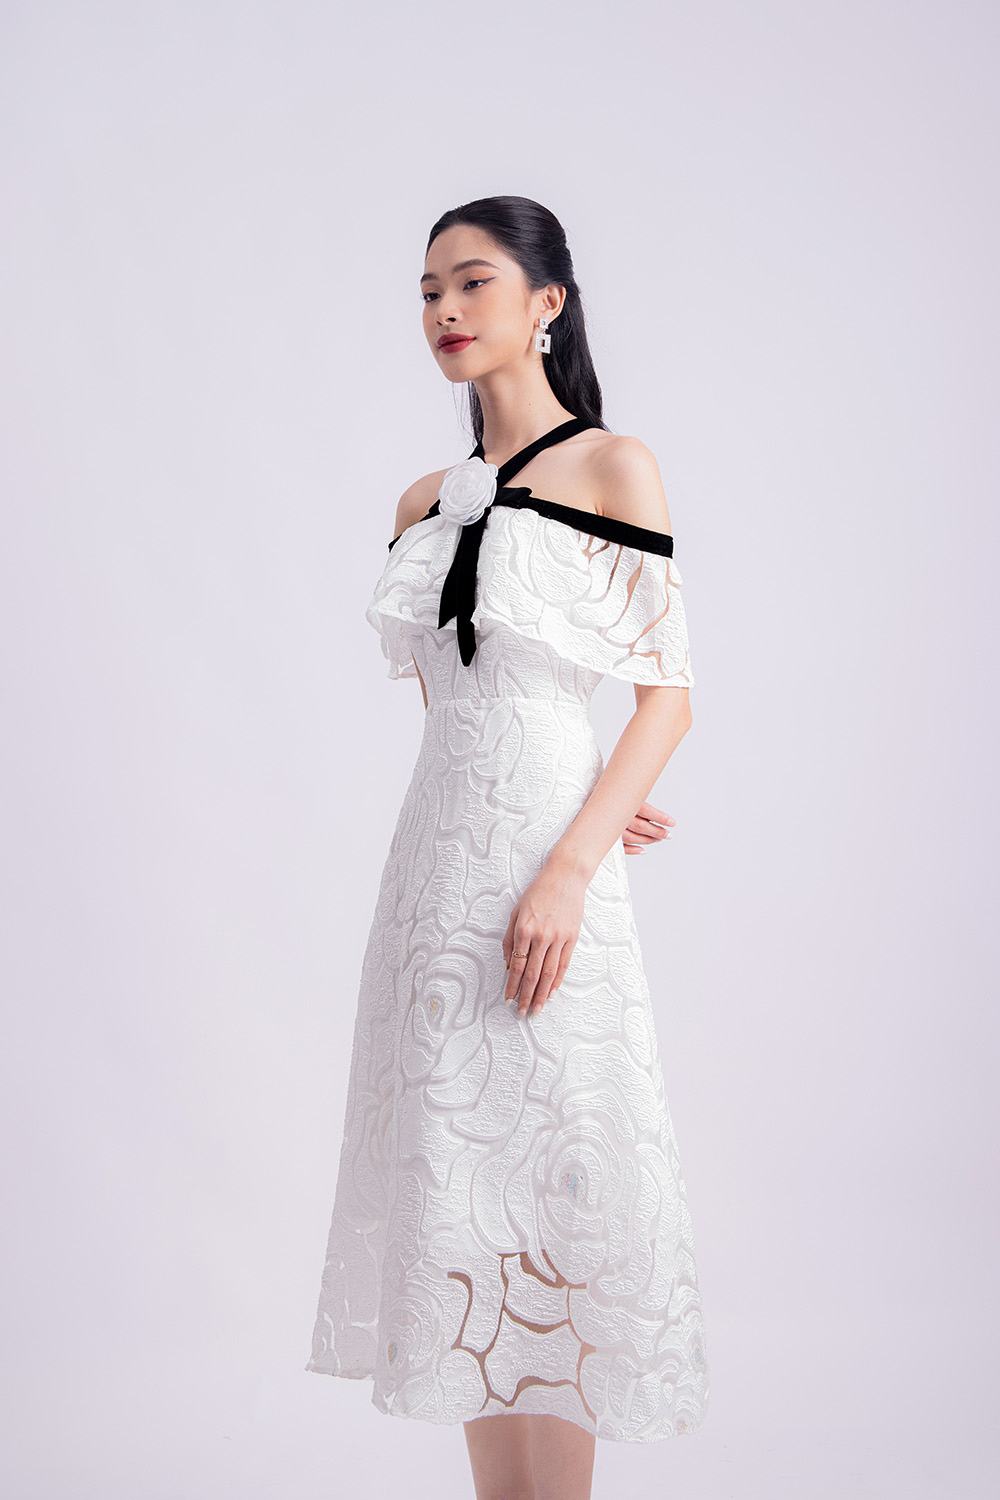 Giảm giá V687 Váy đầm thiết kế dự tiệc đám cưới màu trắng trễ vai dáng xòe  mã - Mua Thông Minh